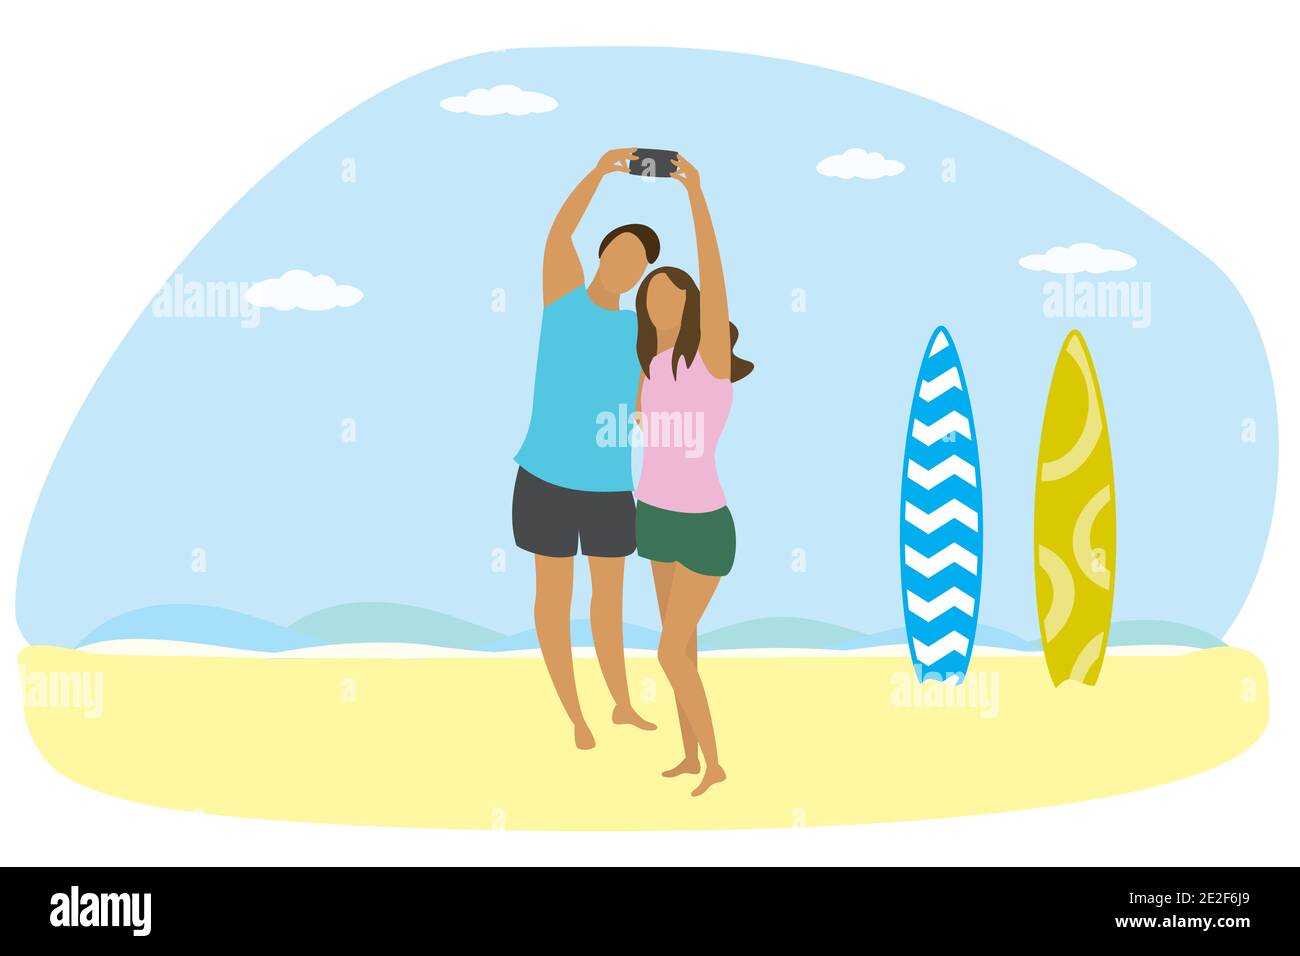 Glückliches Paar in Liebe am Strand und zwei Surfbretter, Leute Nehmen Sie ein Selfie, flache Vektor-Illustration in einfachen trendigen Stil Stock Vektor